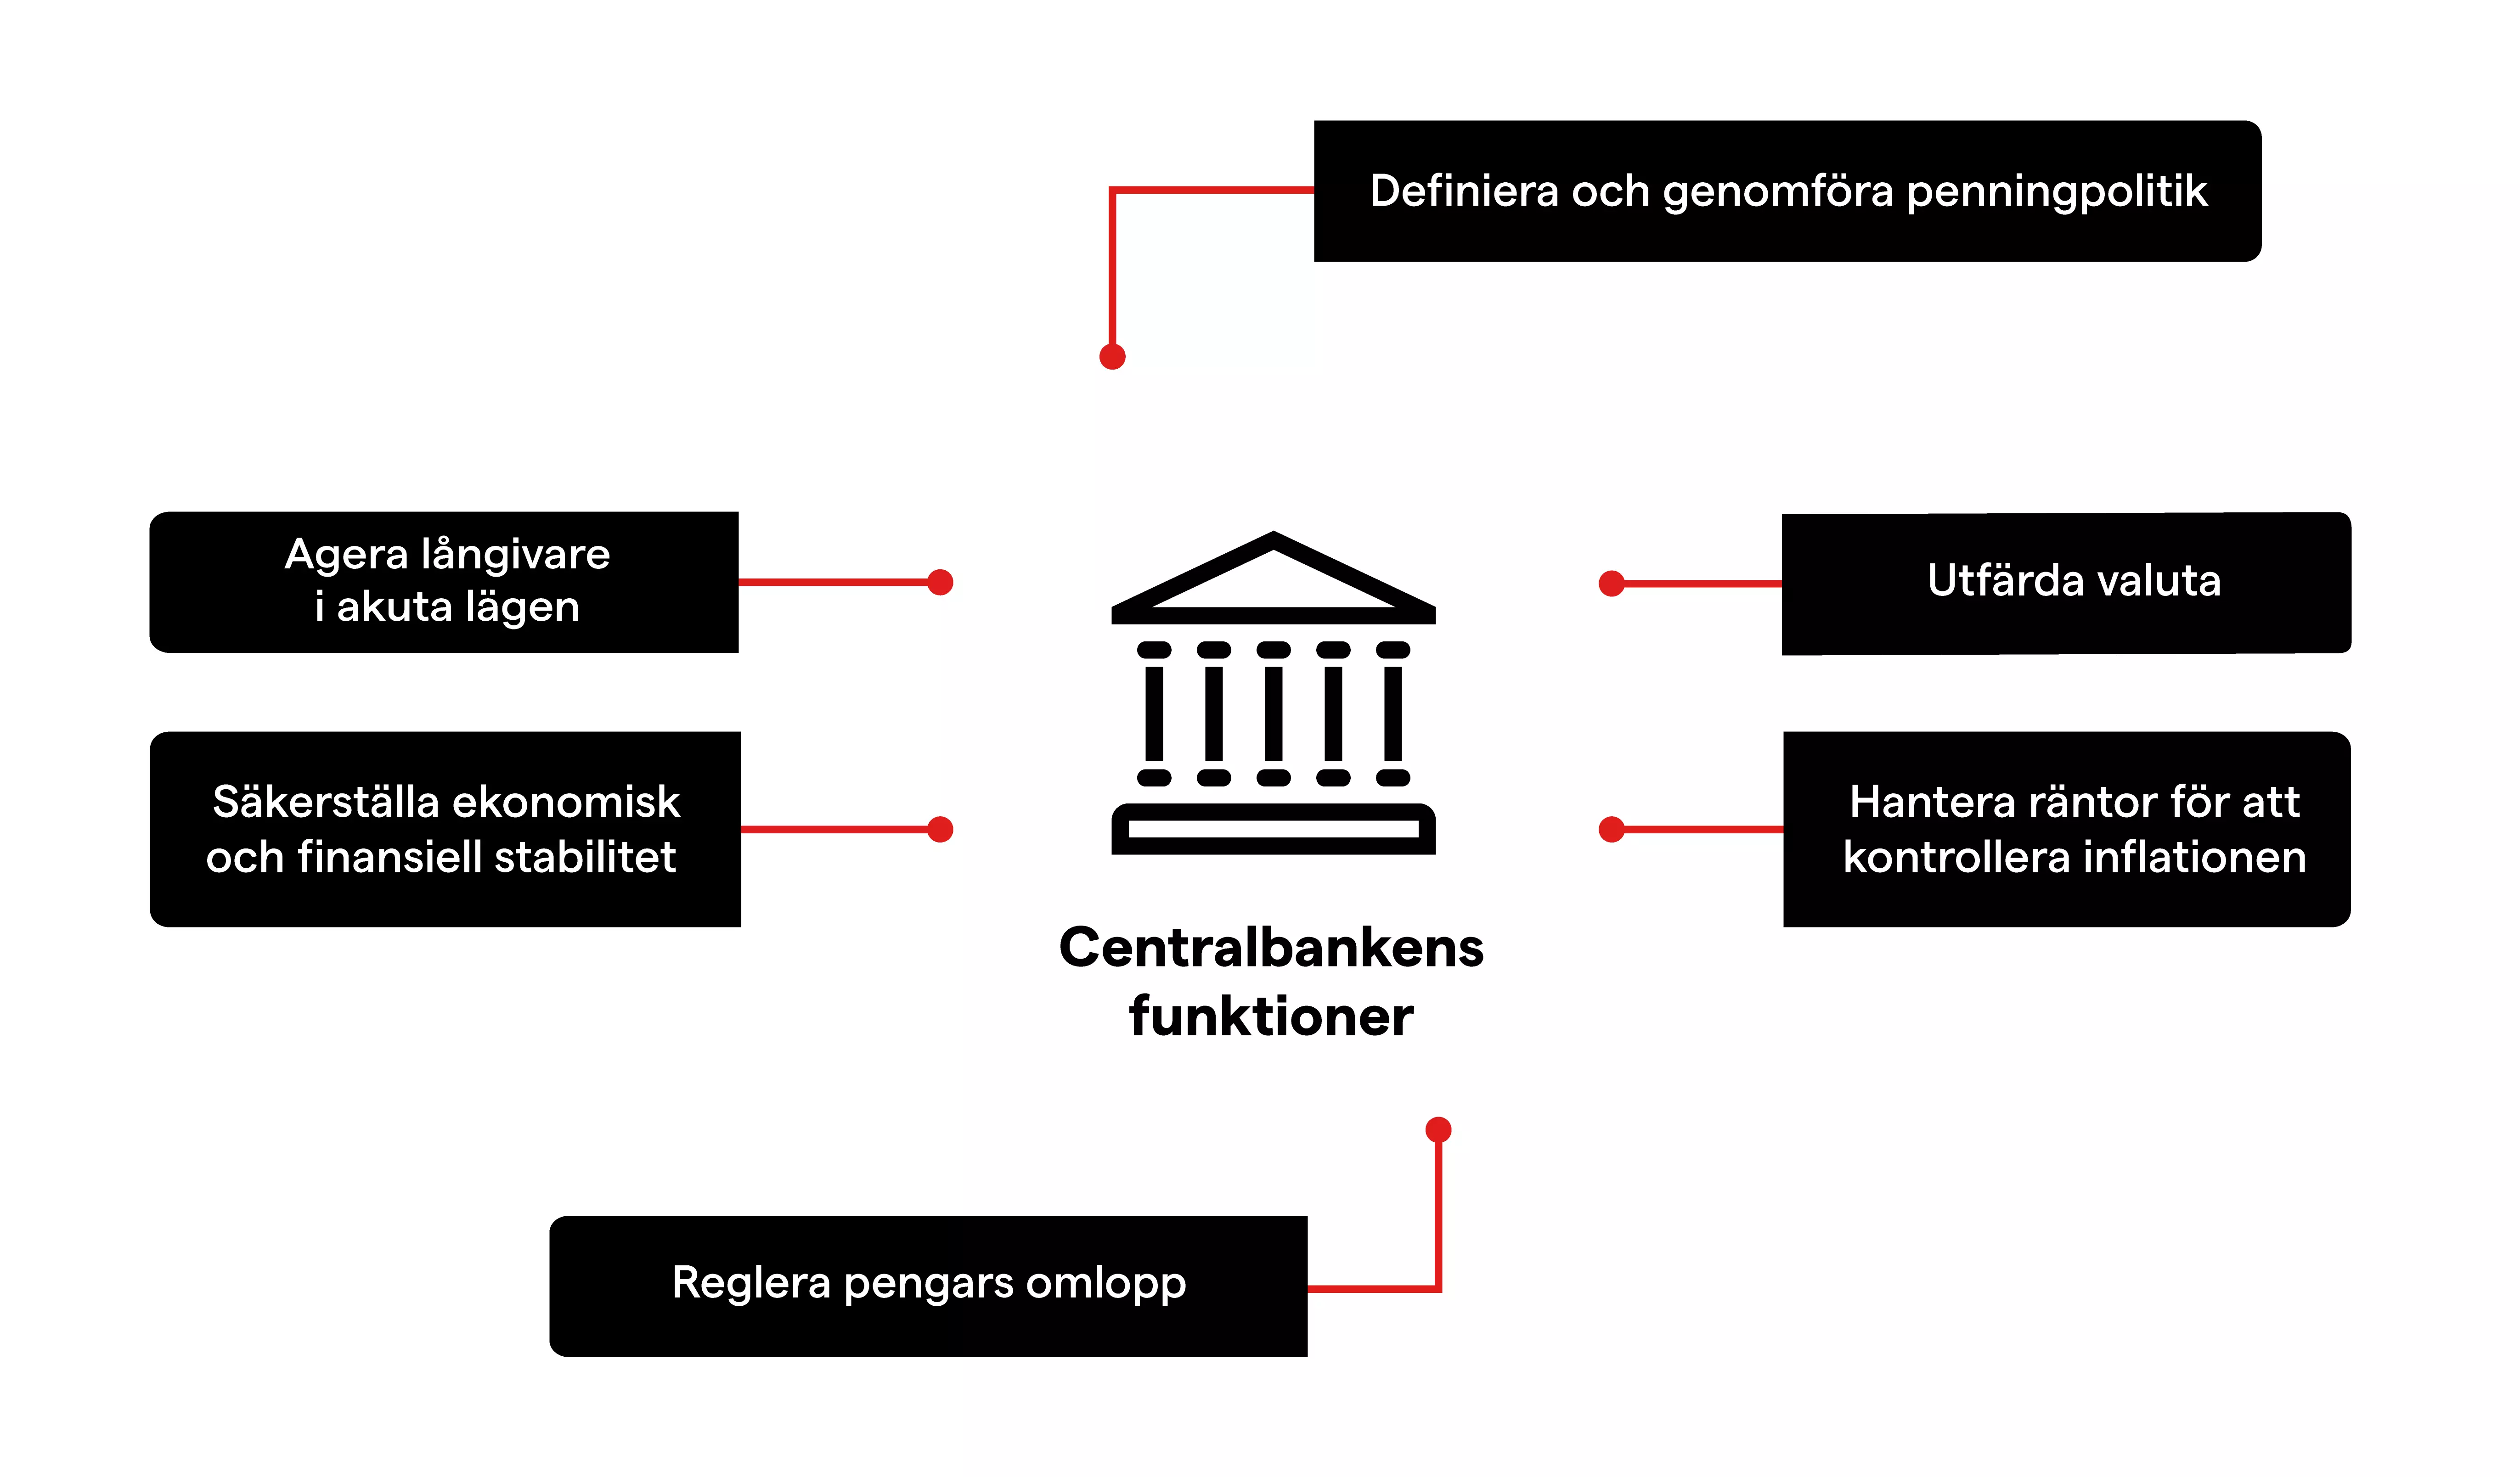 Centralbankens funktioner